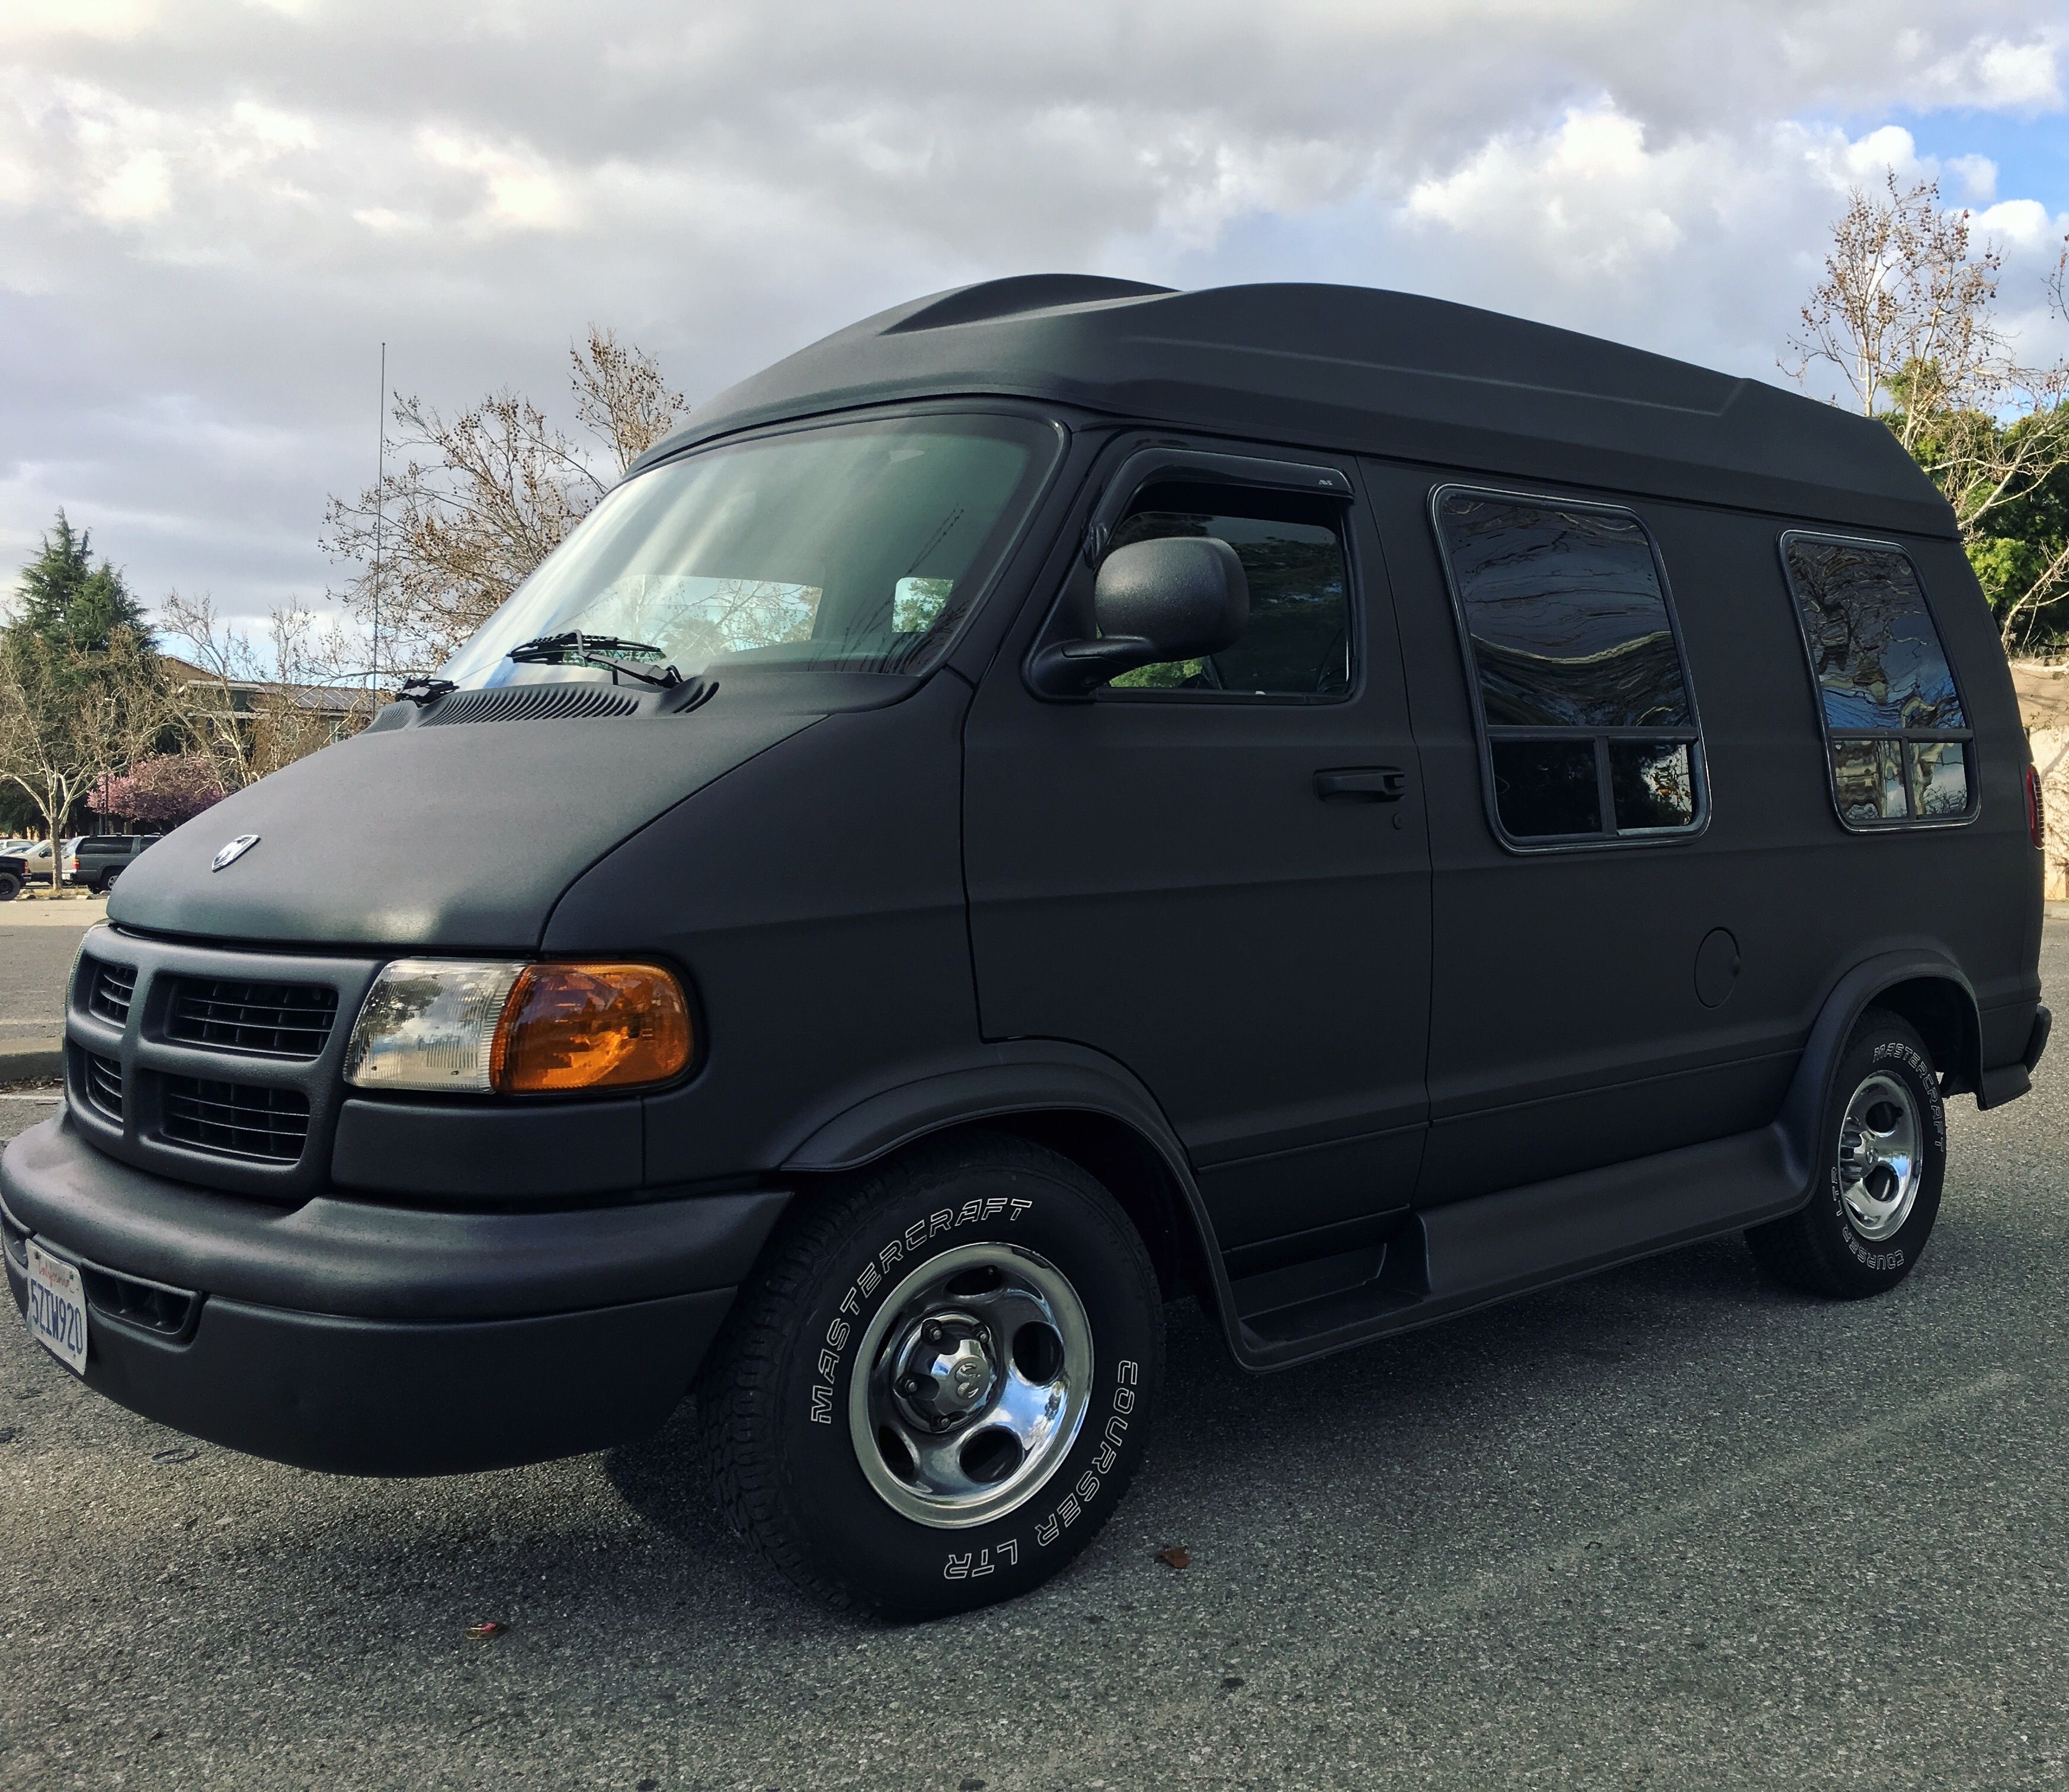 Dodge 1999 ram 1500 conversion Van Bed Liner! | Dodge van, Van, Travel van